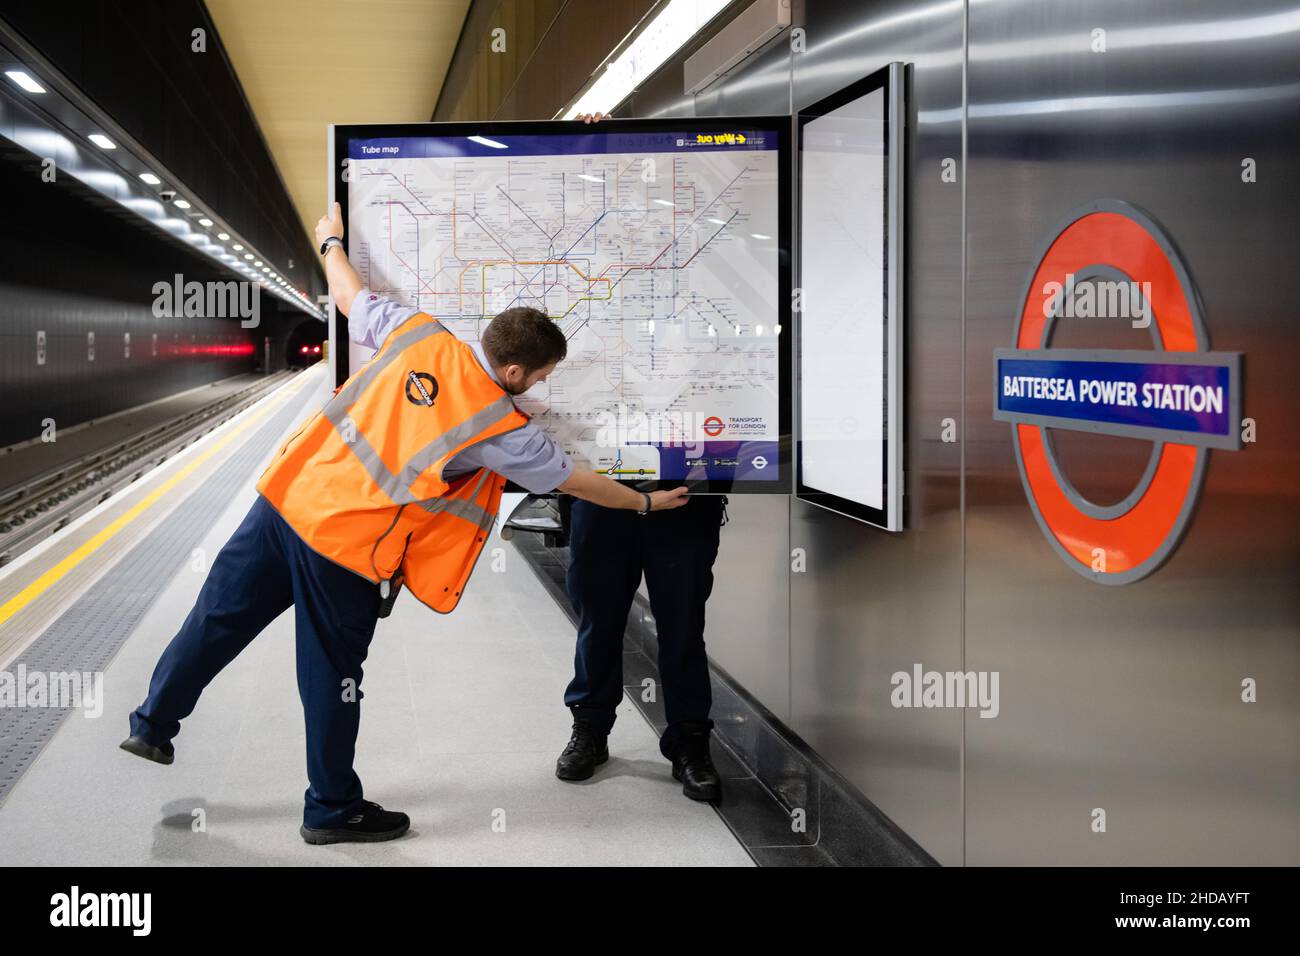 Le personnel du métro de Londres installe de nouvelles cartes ferroviaires et de tubes à la station électrique de Battersea, en prévision de son ouverture le lundi 20th septembre 2021 Banque D'Images